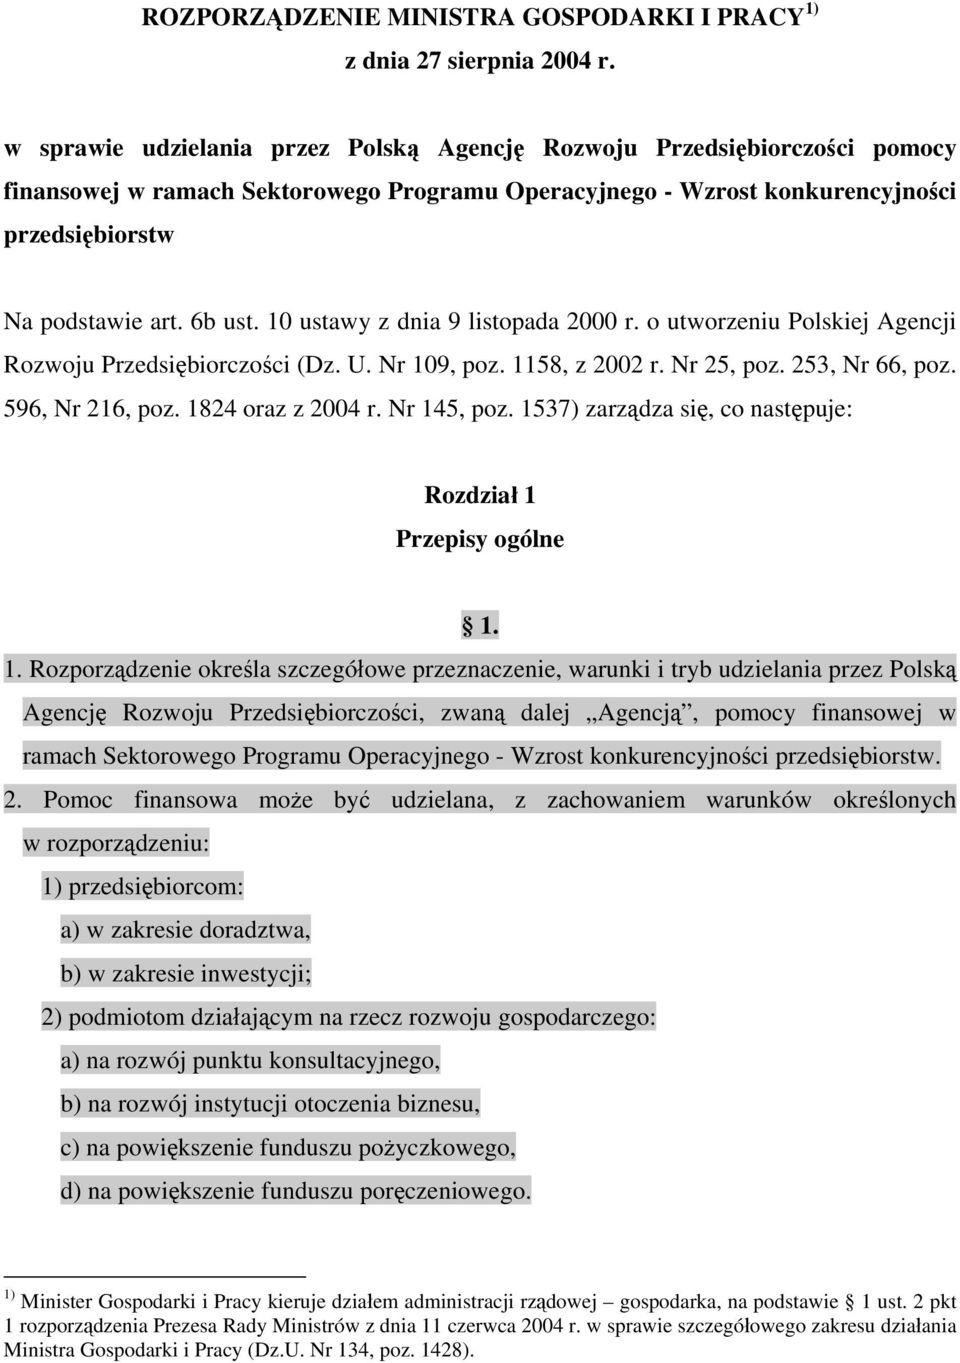 10 ustawy z dnia 9 listopada 2000 r. o utworzeniu Polskiej Agencji Rozwoju Przedsiębiorczości (Dz. U. Nr 109, poz. 1158, z 2002 r. Nr 25, poz. 253, Nr 66, poz. 596, Nr 216, poz. 1824 oraz z 2004 r.